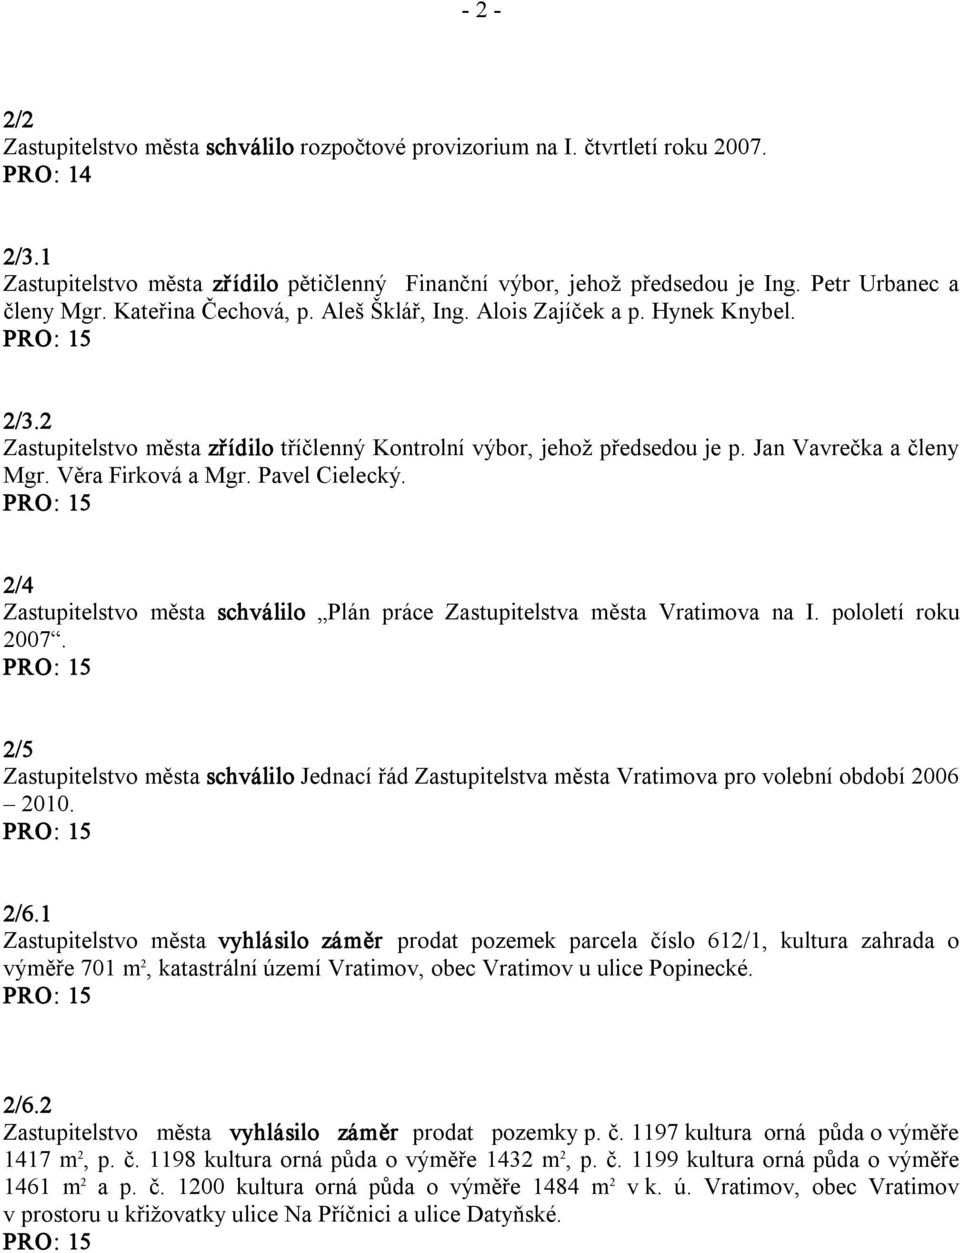 Pavel Cielecký. 2/4 Zastupitelstvo města schválilo Plán práce Zastupitelstva města Vratimova na I. pololetí roku 2007.